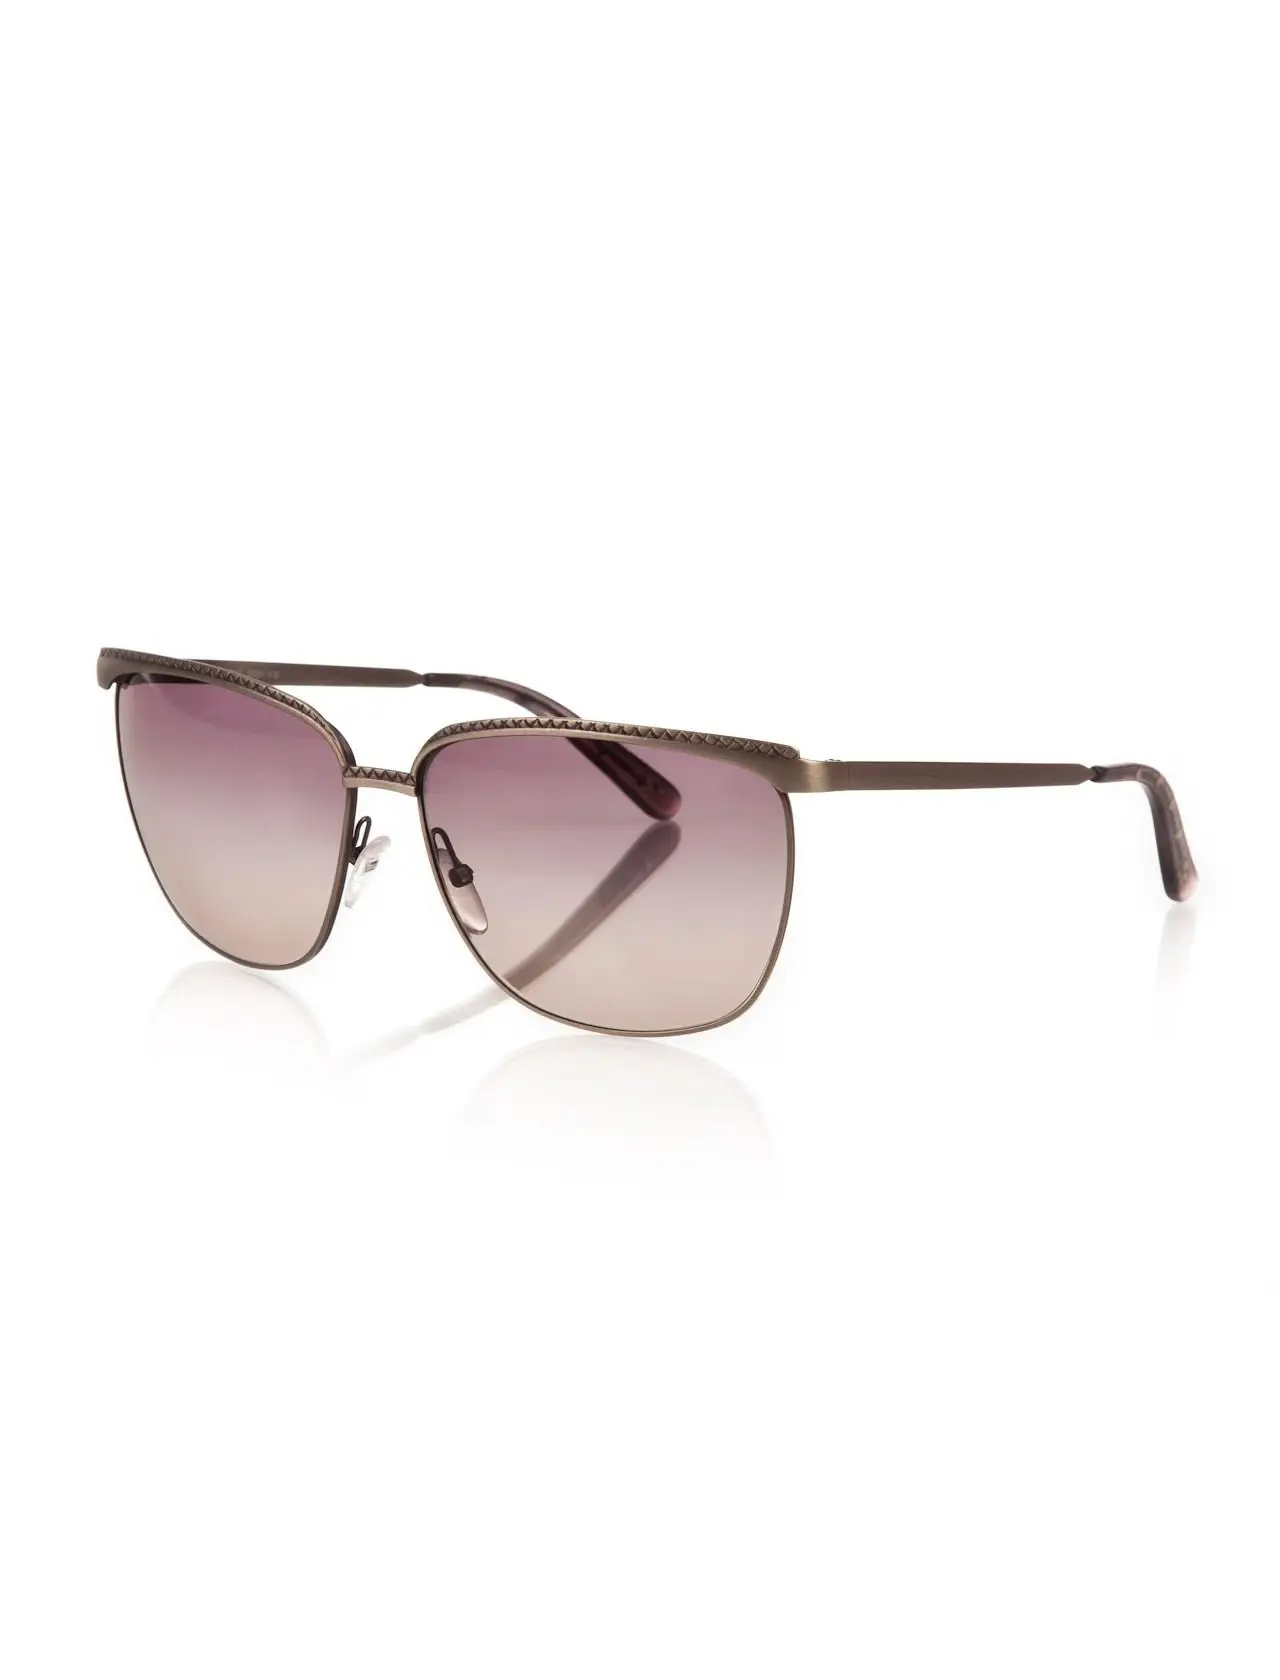 

Women's sunglasses b.v 168/s sln 61 dx metal metallic organic square square 61-13-140 bottega veneta